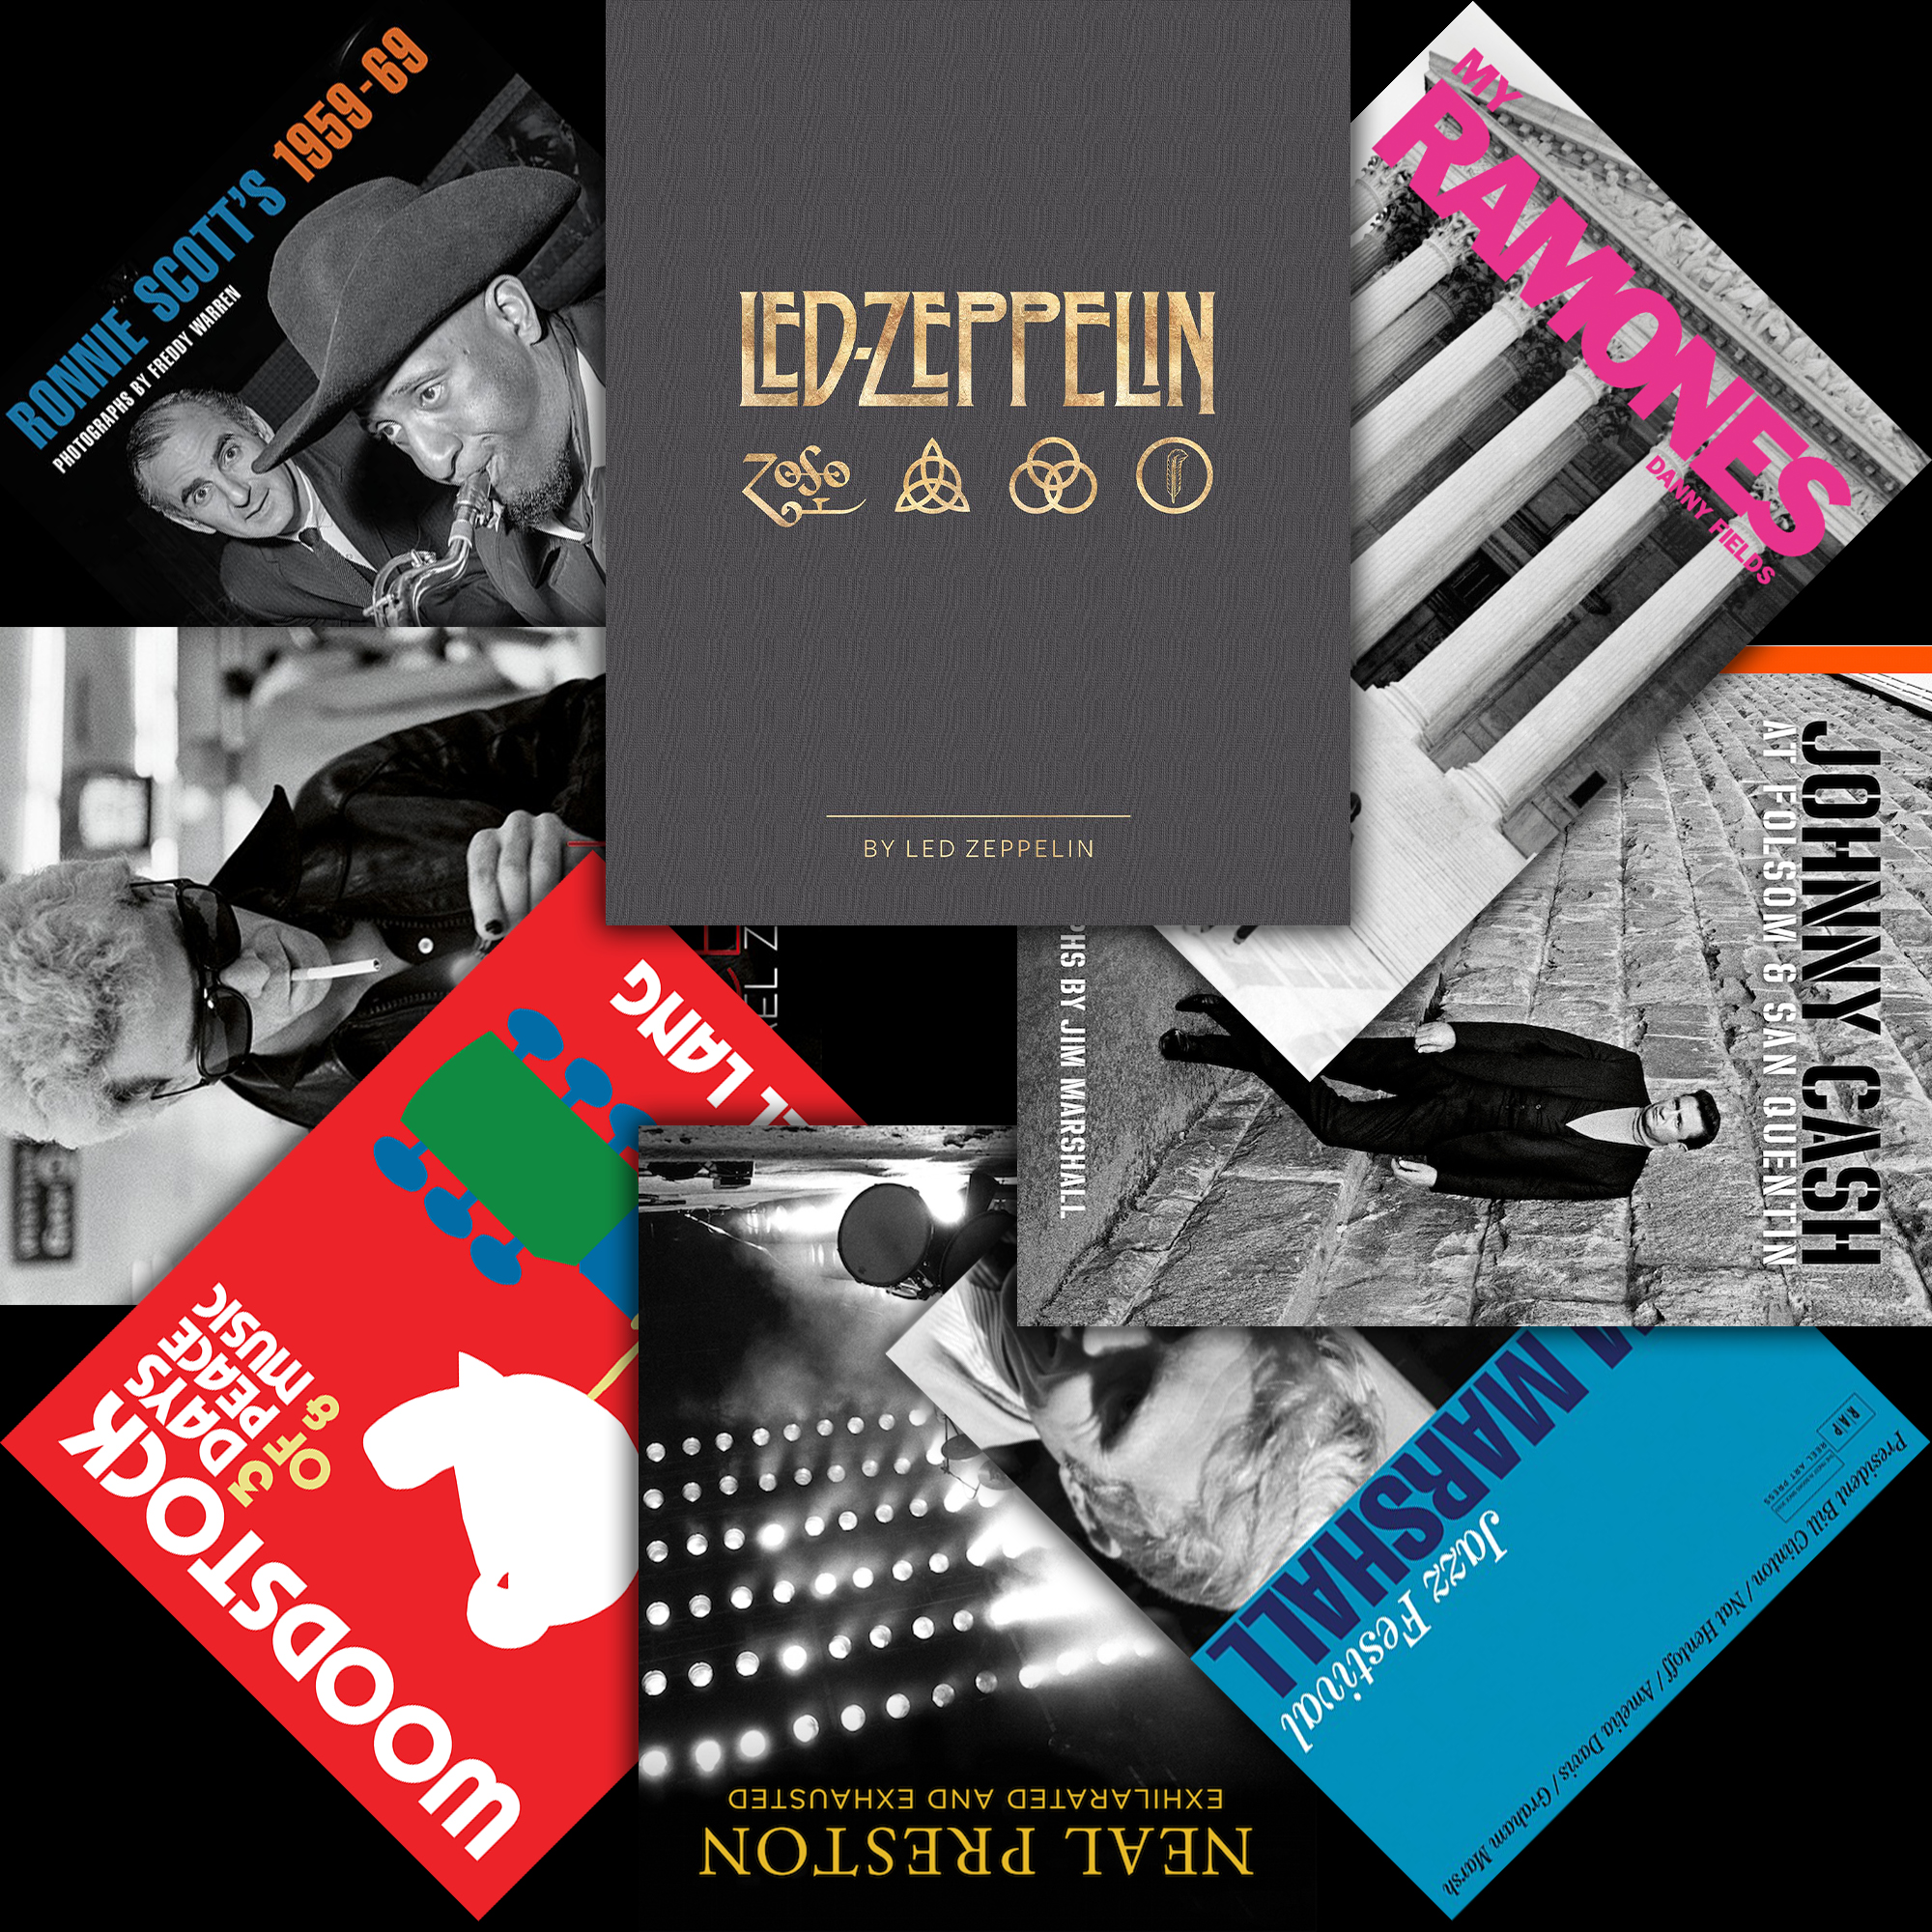 Reel Art Press: Led Zeppelin by Led Zeppelin